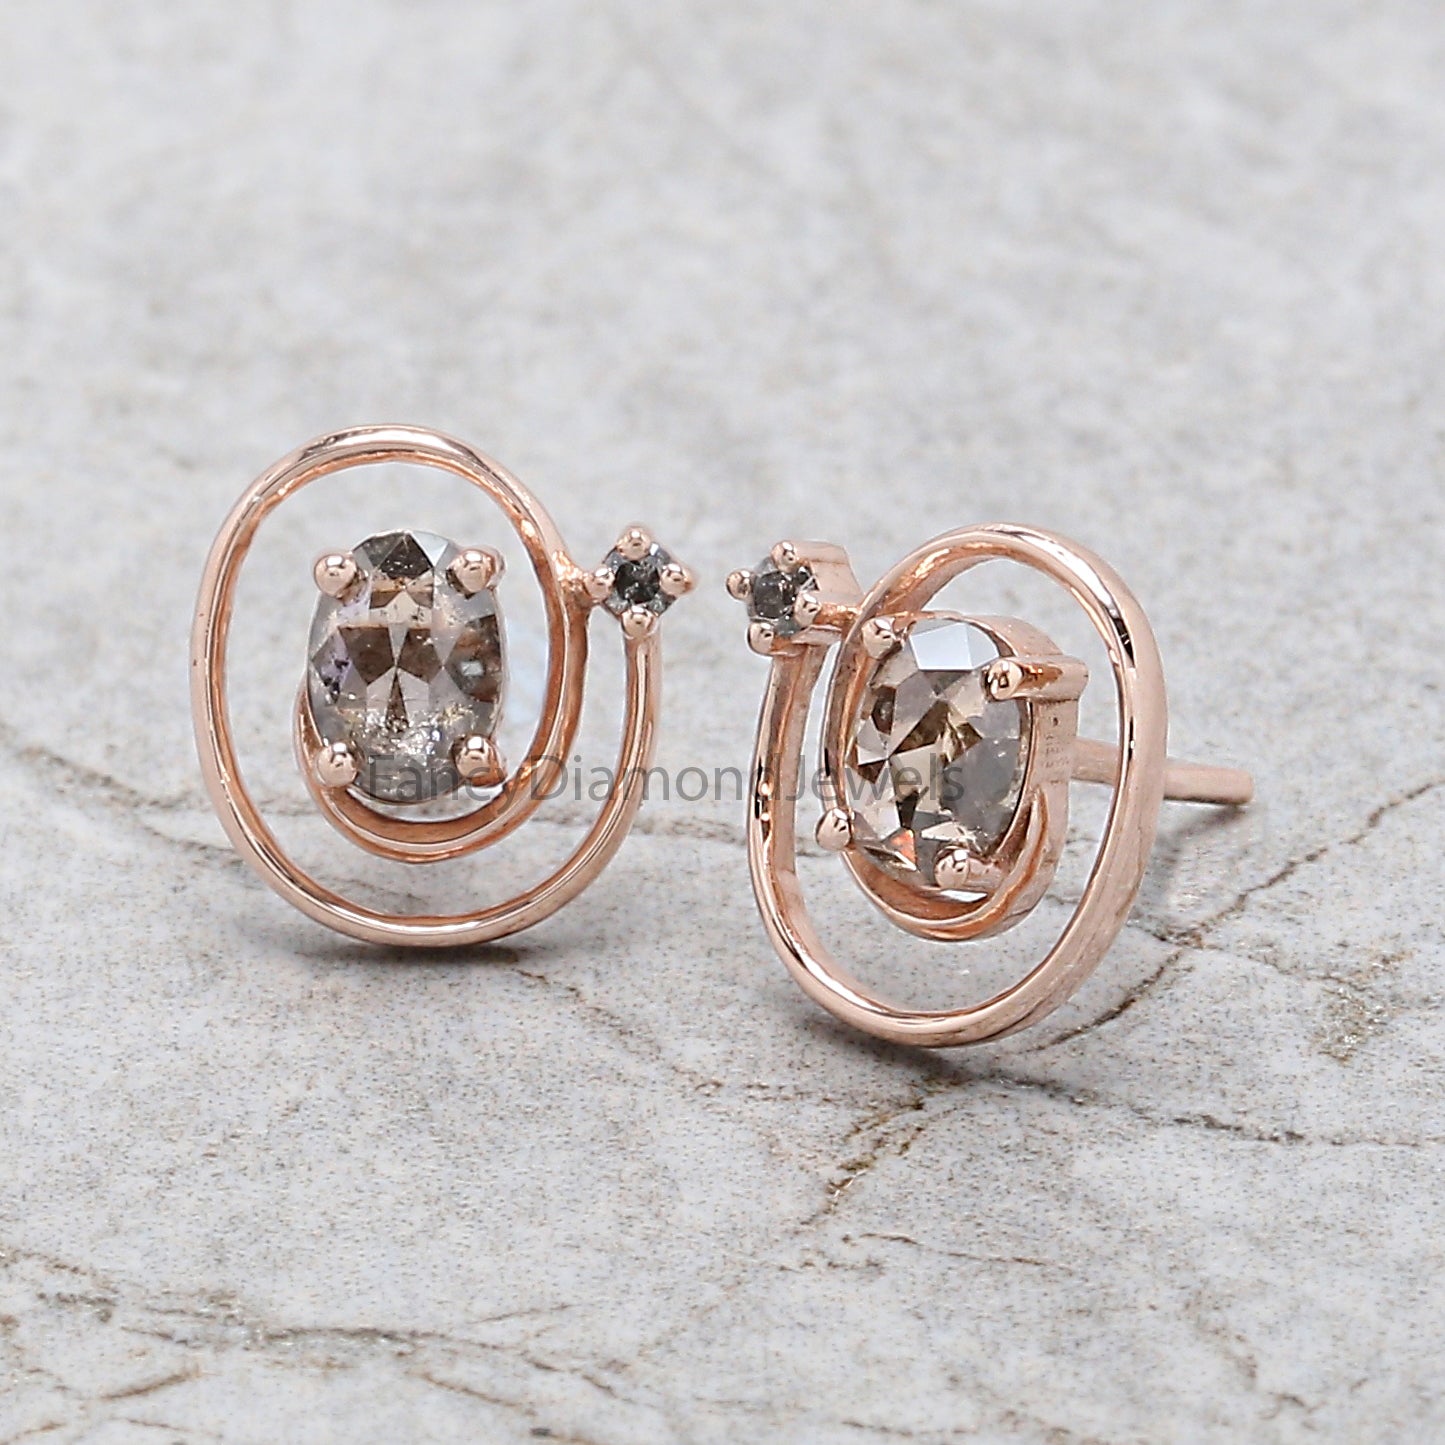 Oval Salt And Pepper Diamond Earring, Oval Shape Earring, Prong Earring, Engagement Earring, Earlobe Earrings, Earrings Jewelry, KDN969